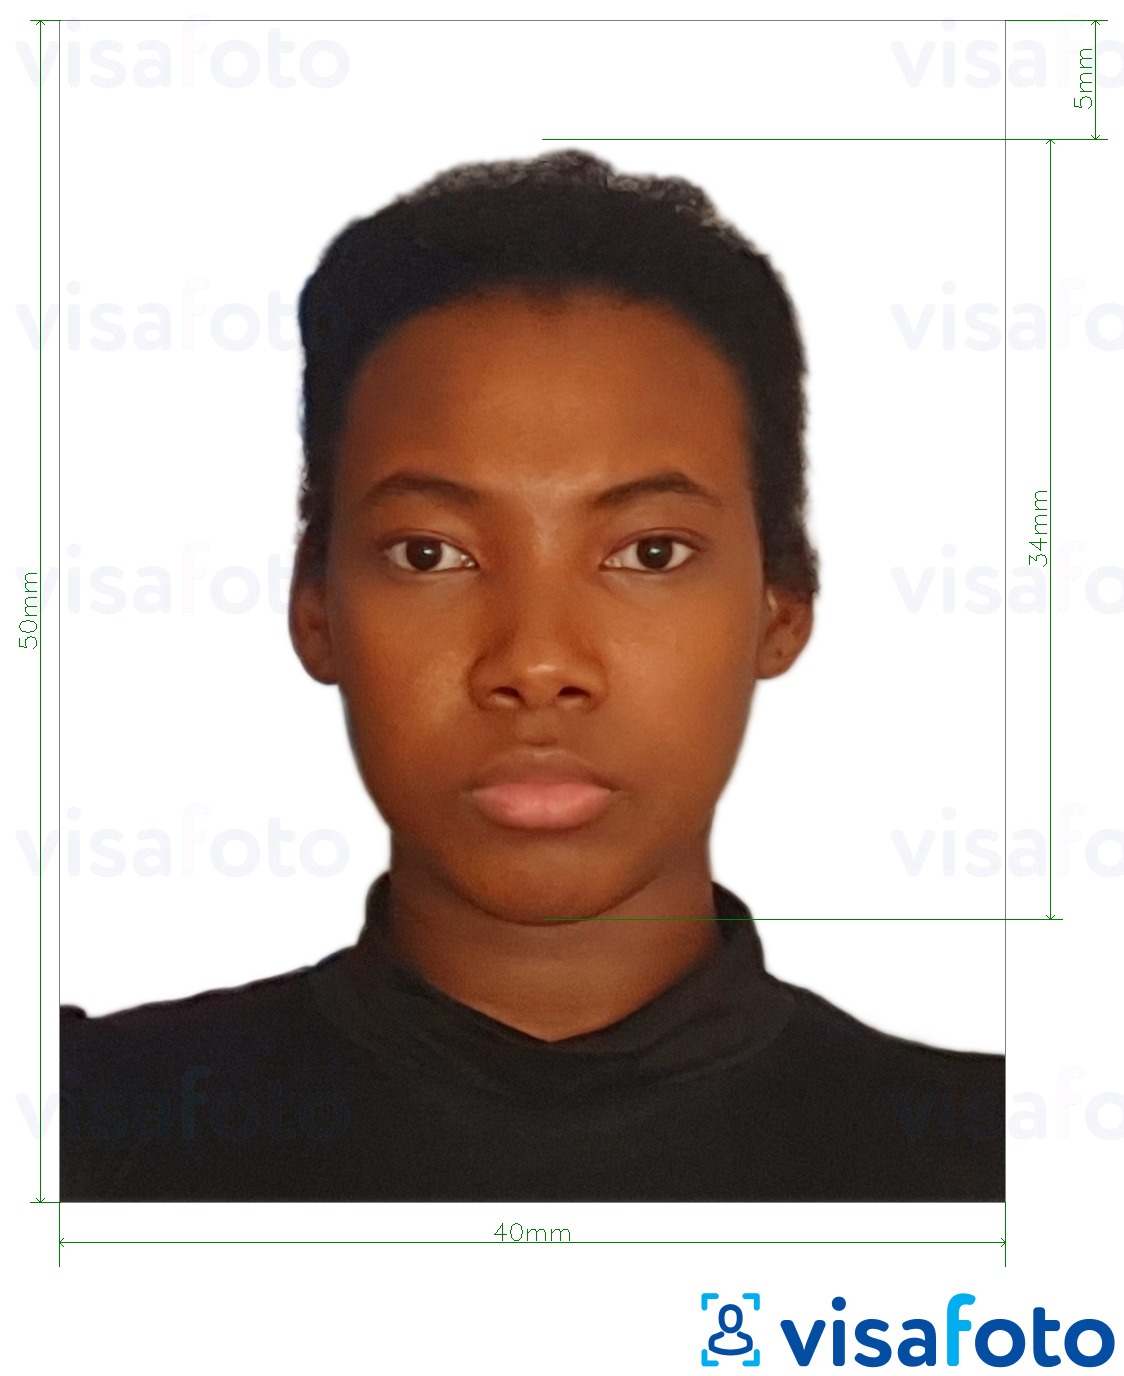 نمونه ی یک عکس برای گذرنامه کامرون 4x5 سانتی متر (40x50 میلی متر) با مشخصات دقیق